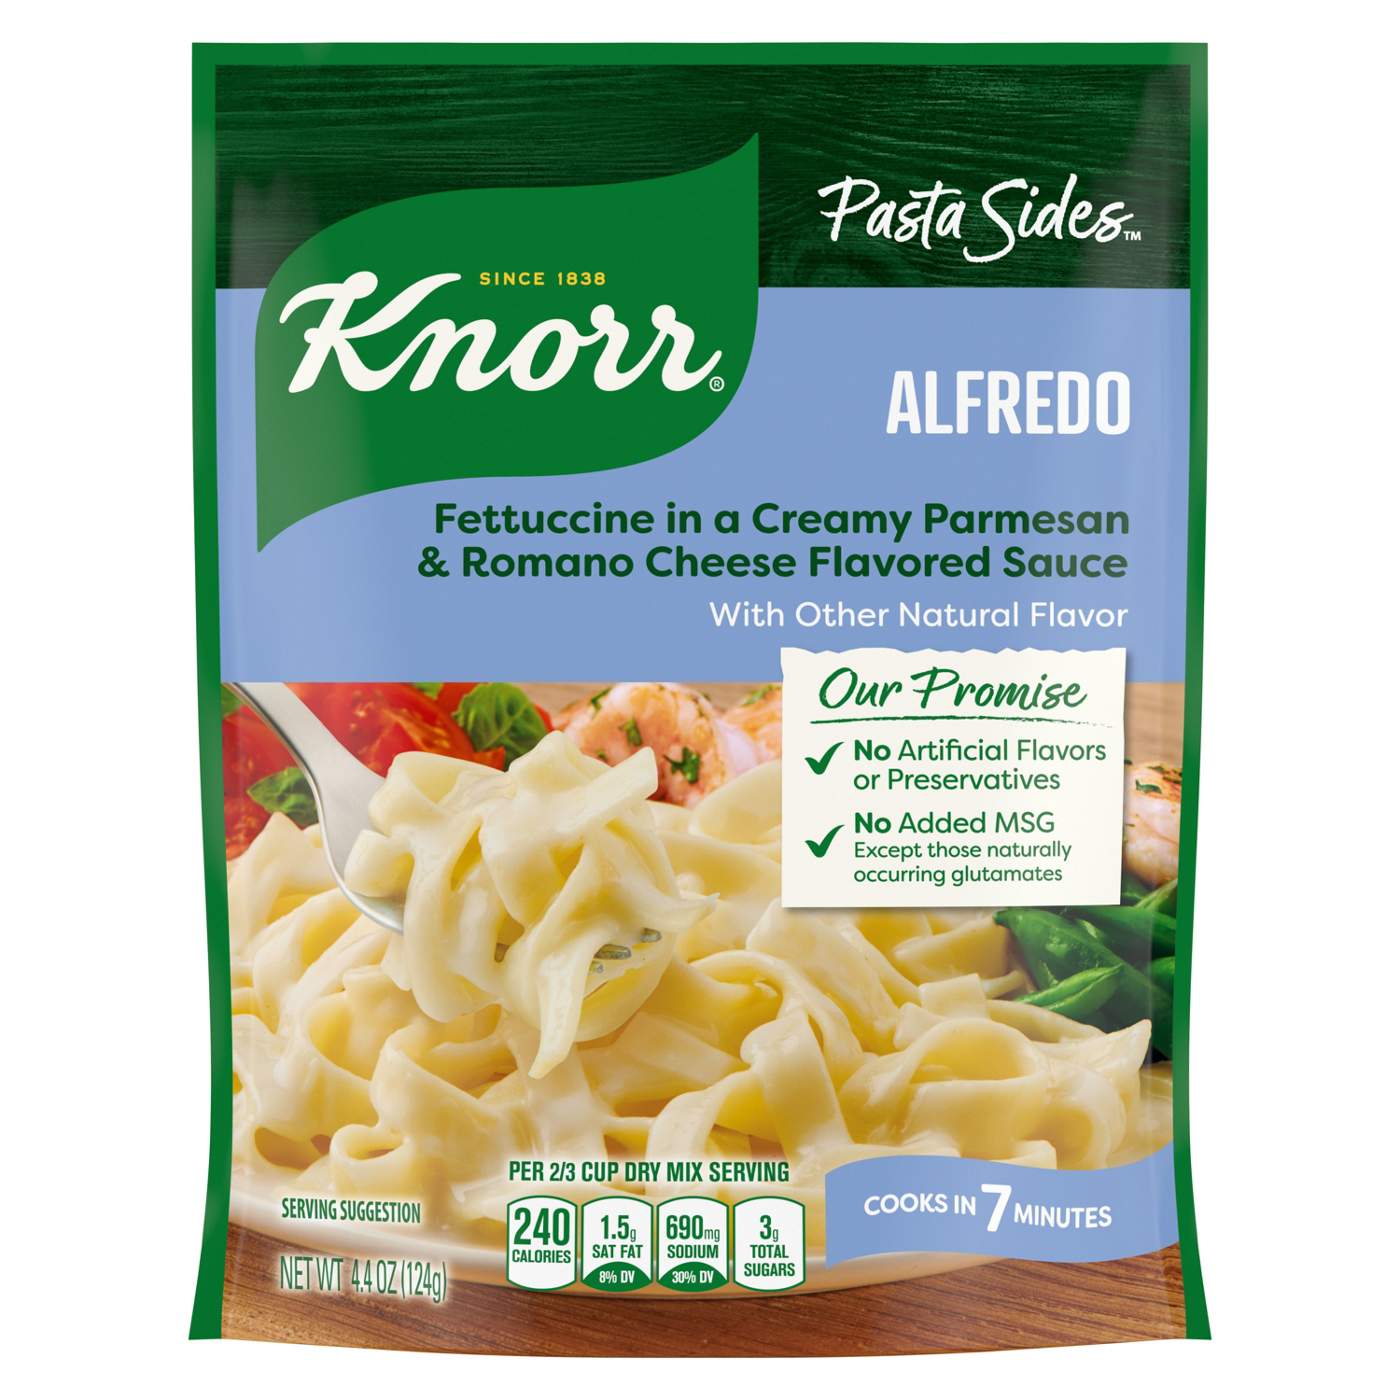 Knorr Pasta Sides Fettuccine Alfredo; image 1 of 8